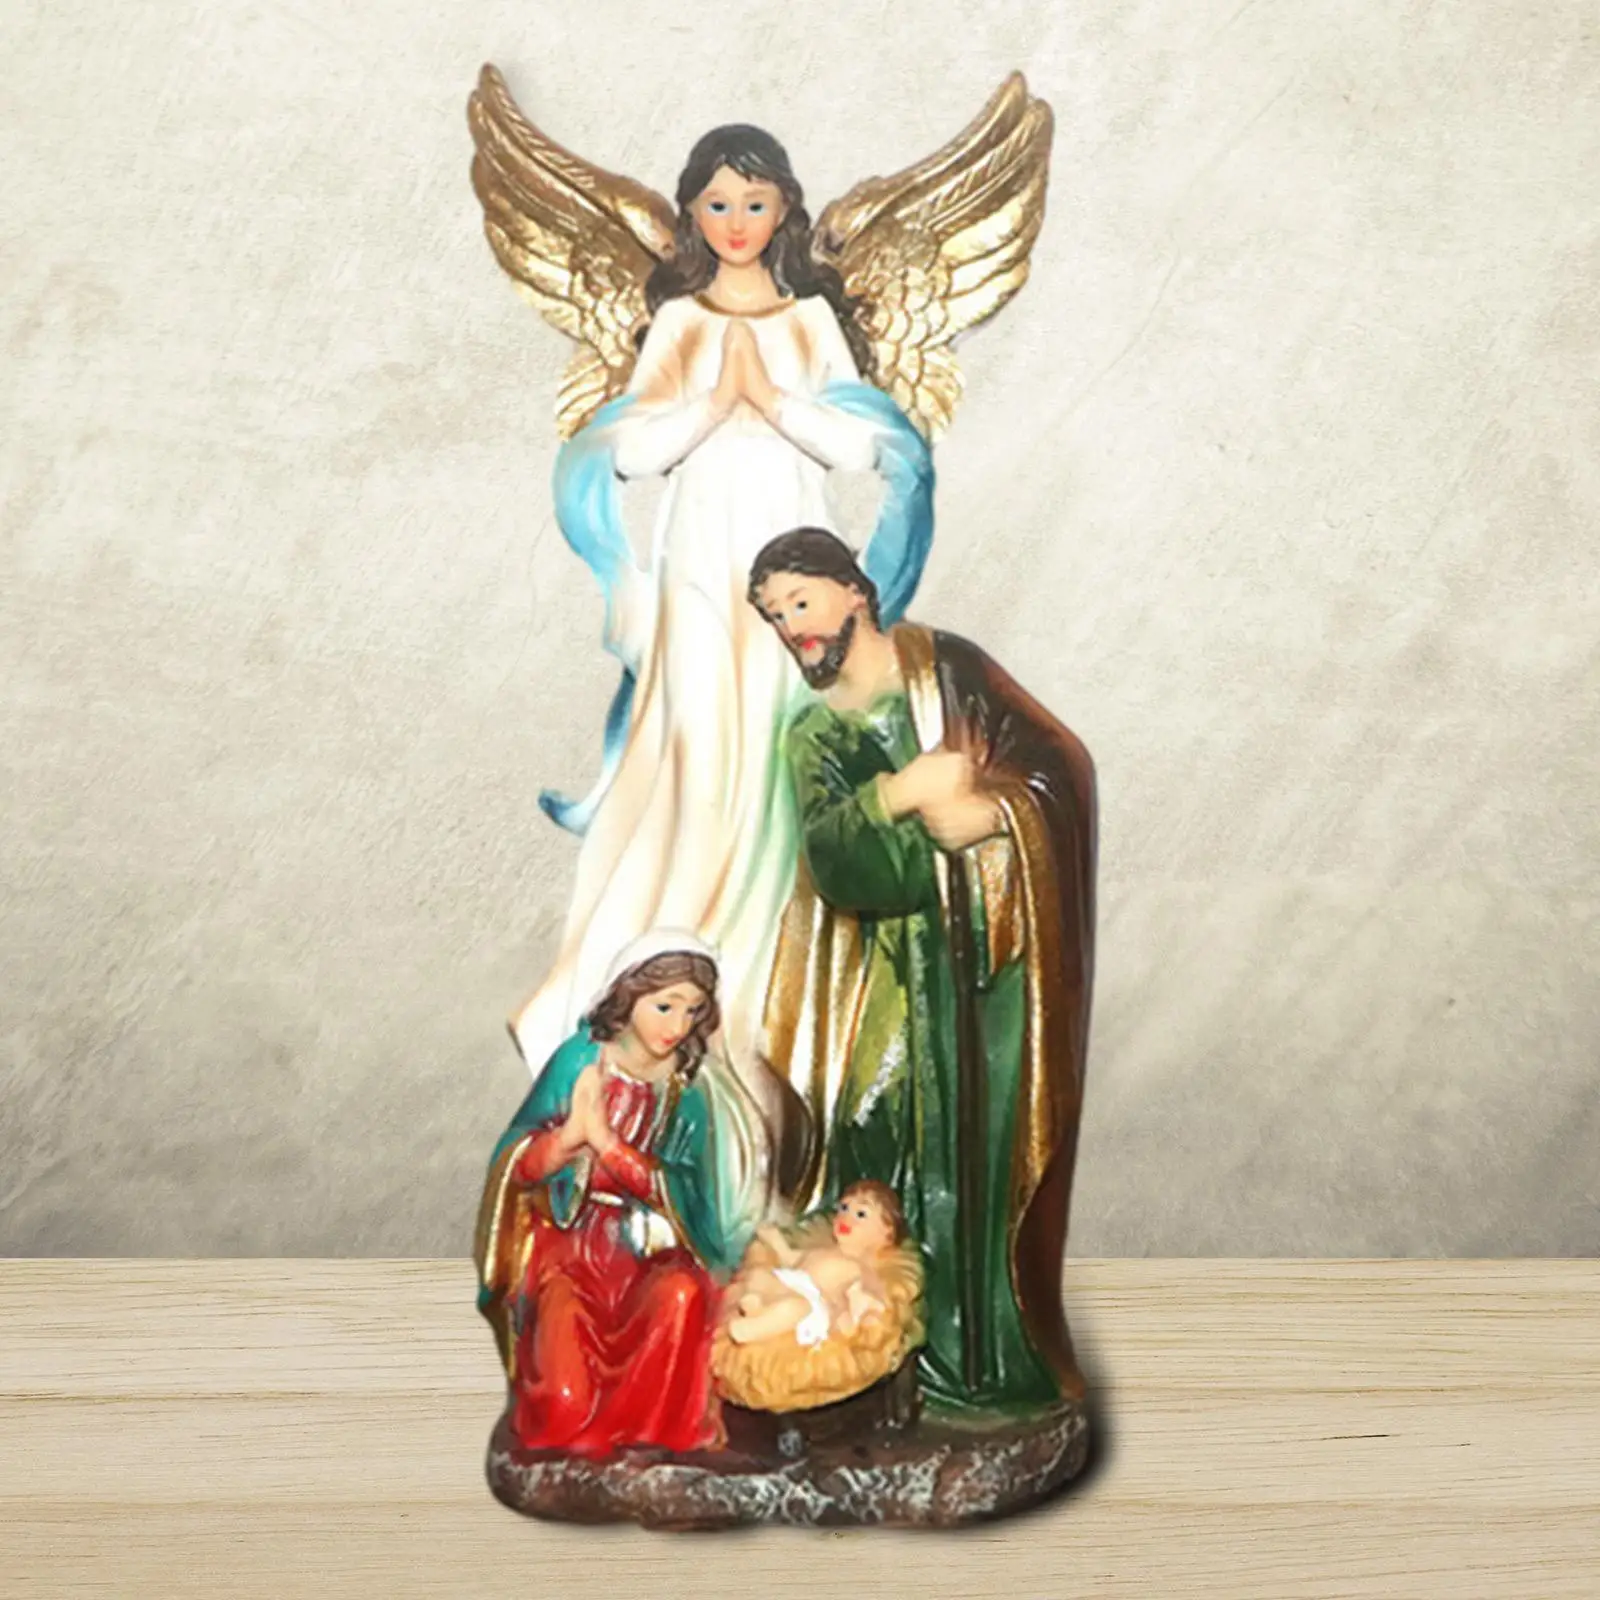 Jesus Manger Scene Figurine Handpainted Religious Resin Spiritual Jesus Statue for Bedroom Shelf Home Living Room Desk